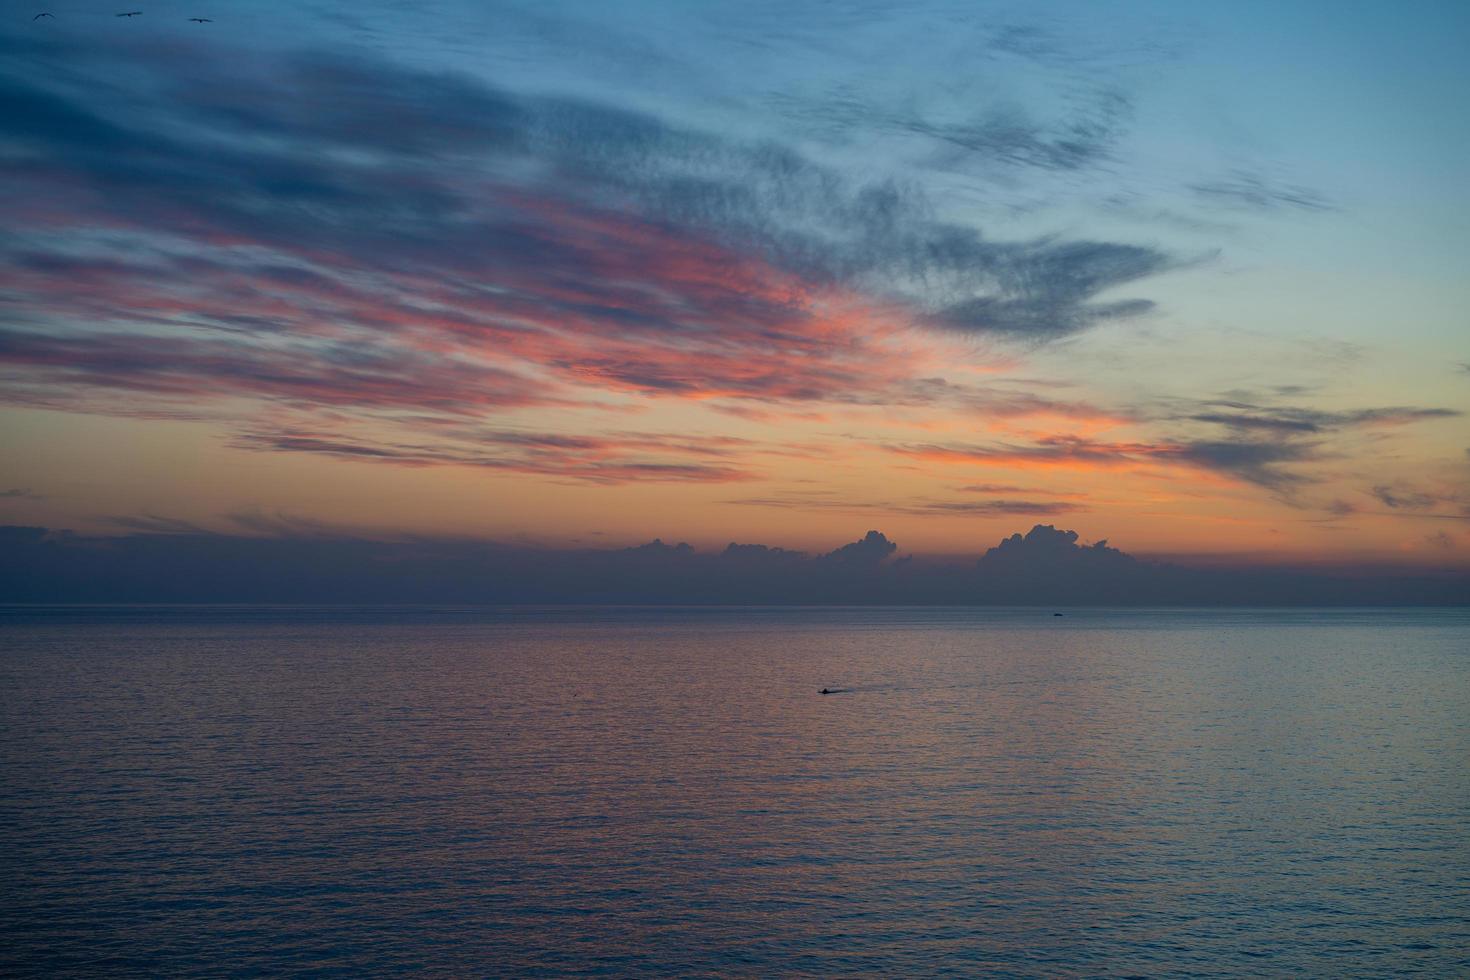 paisaje marino con una hermosa puesta de sol sobre el mar foto